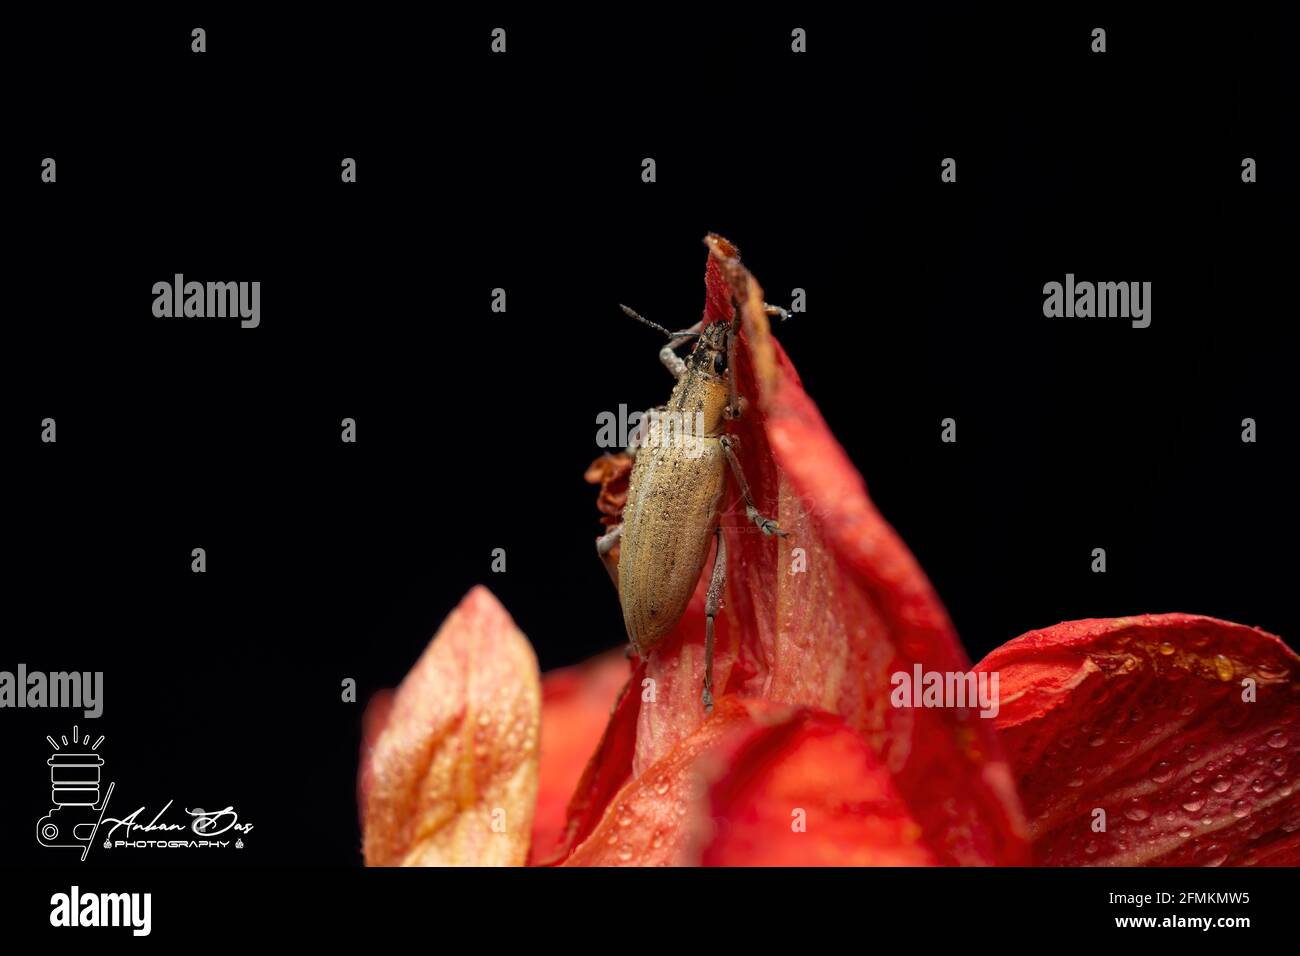 Beetle Stock Photo